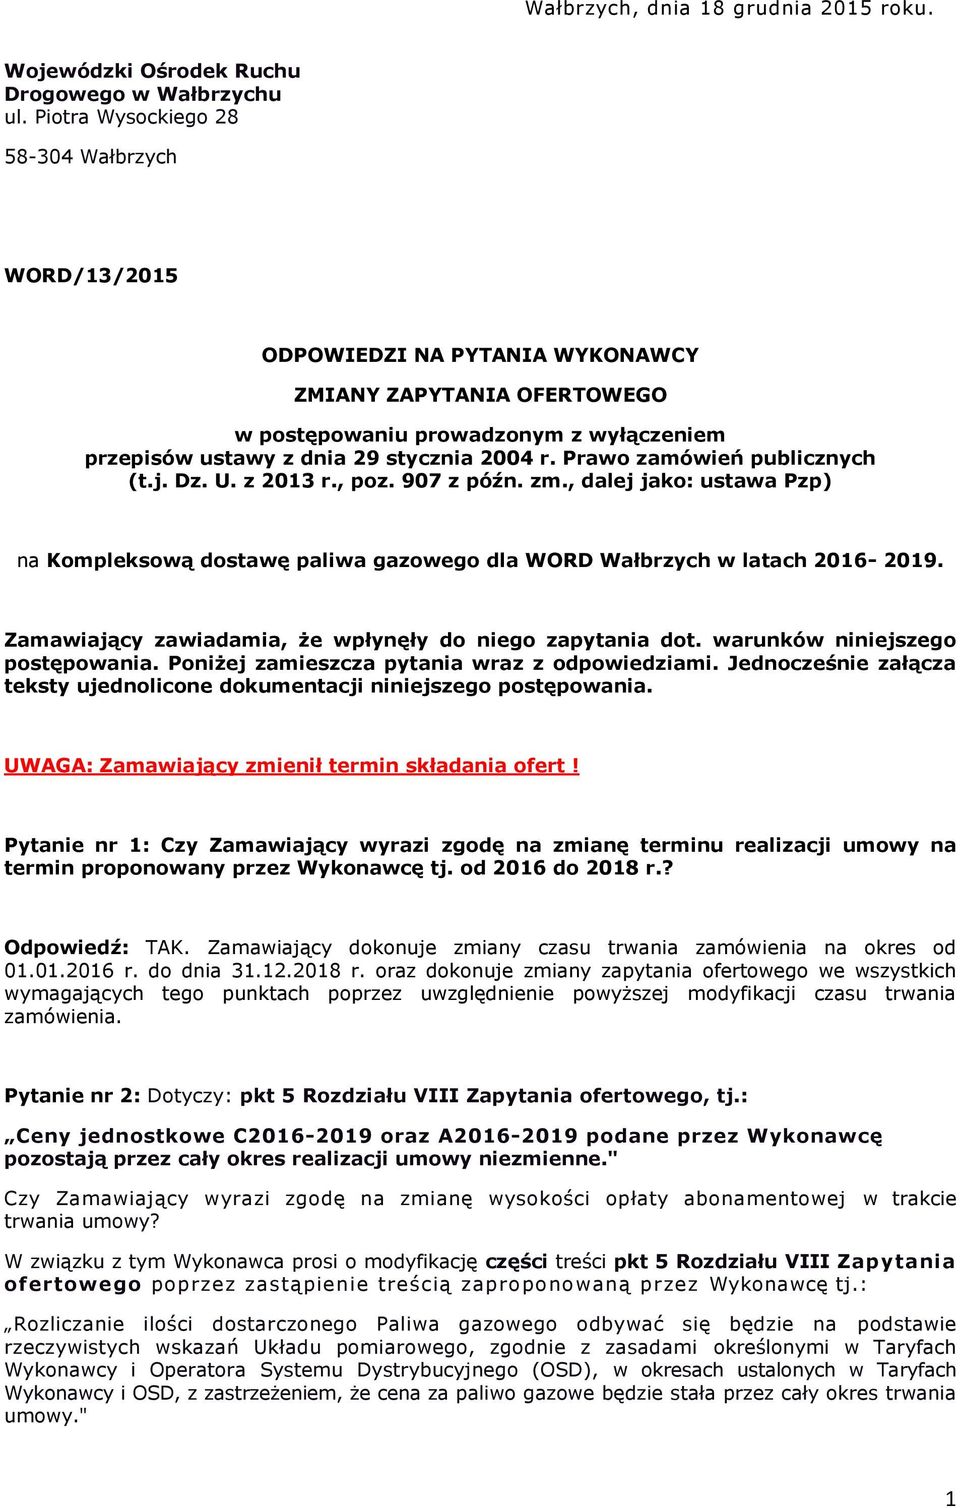 Prawo zamówień publicznych (t.j. Dz. U. z 2013 r., poz. 907 z późn. zm., dalej jako: ustawa Pzp) na Kompleksową dostawę paliwa gazowego dla WORD Wałbrzych w latach 2016-2019.